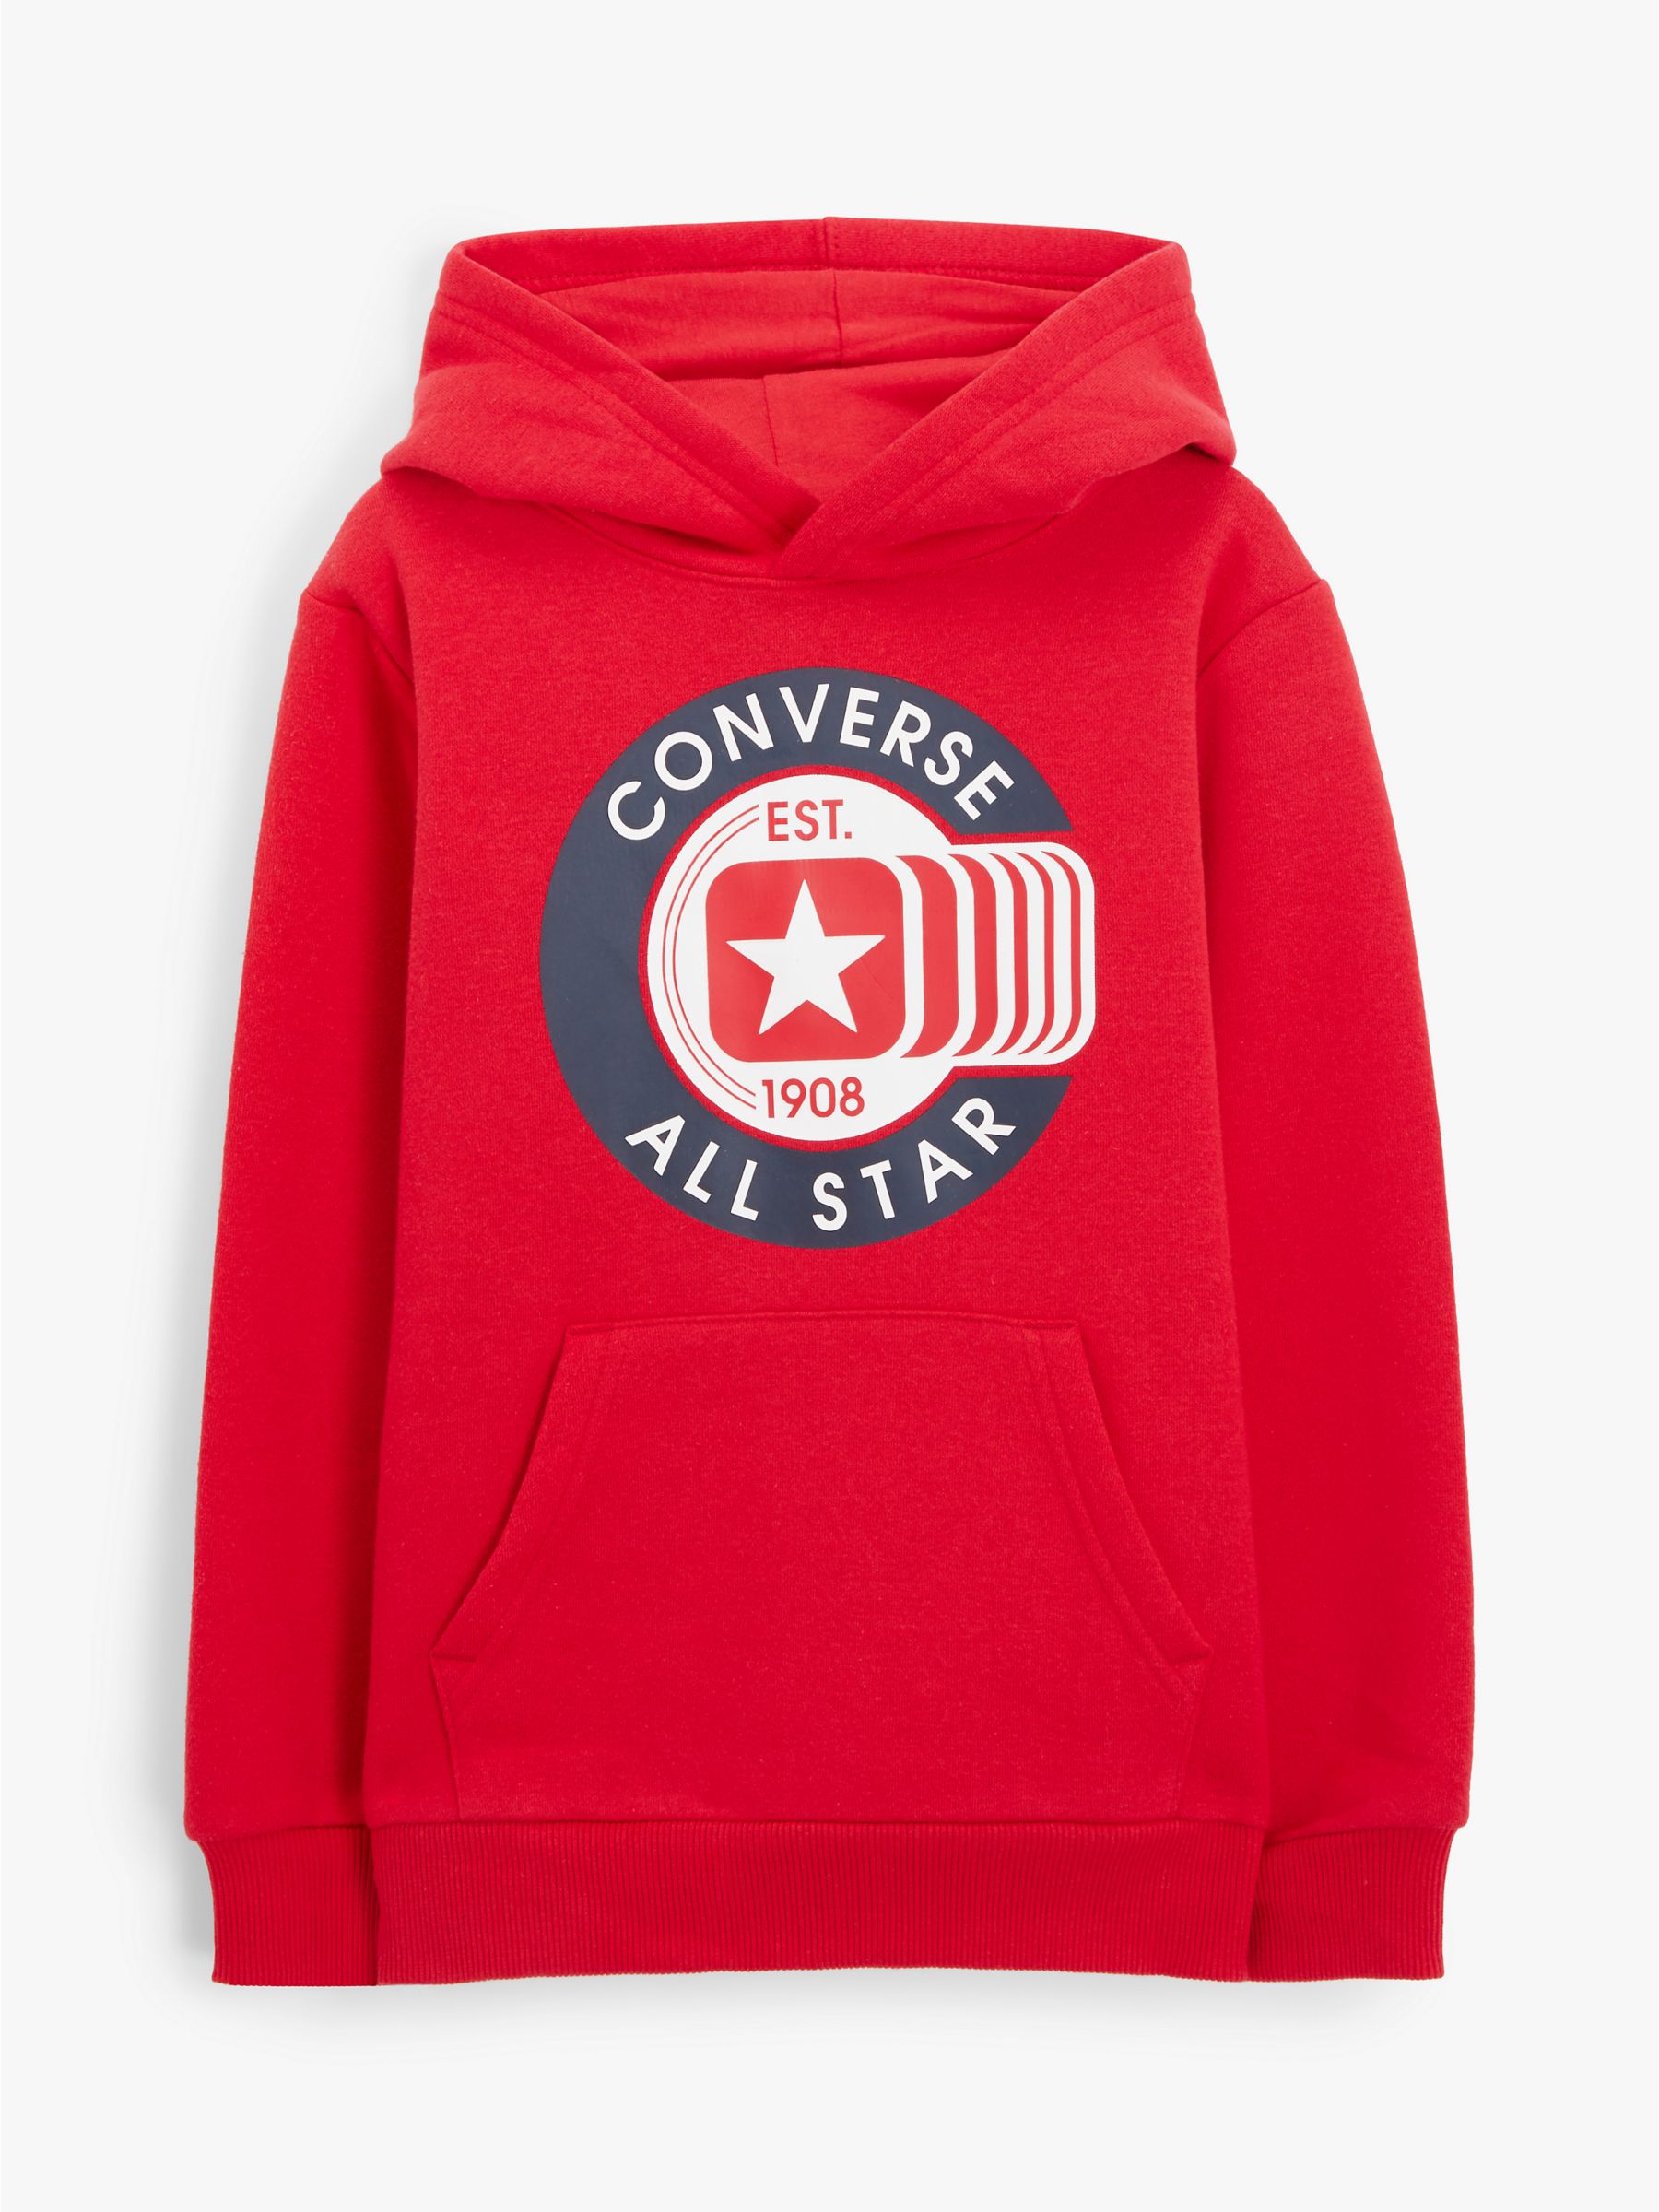 boys converse hoodie